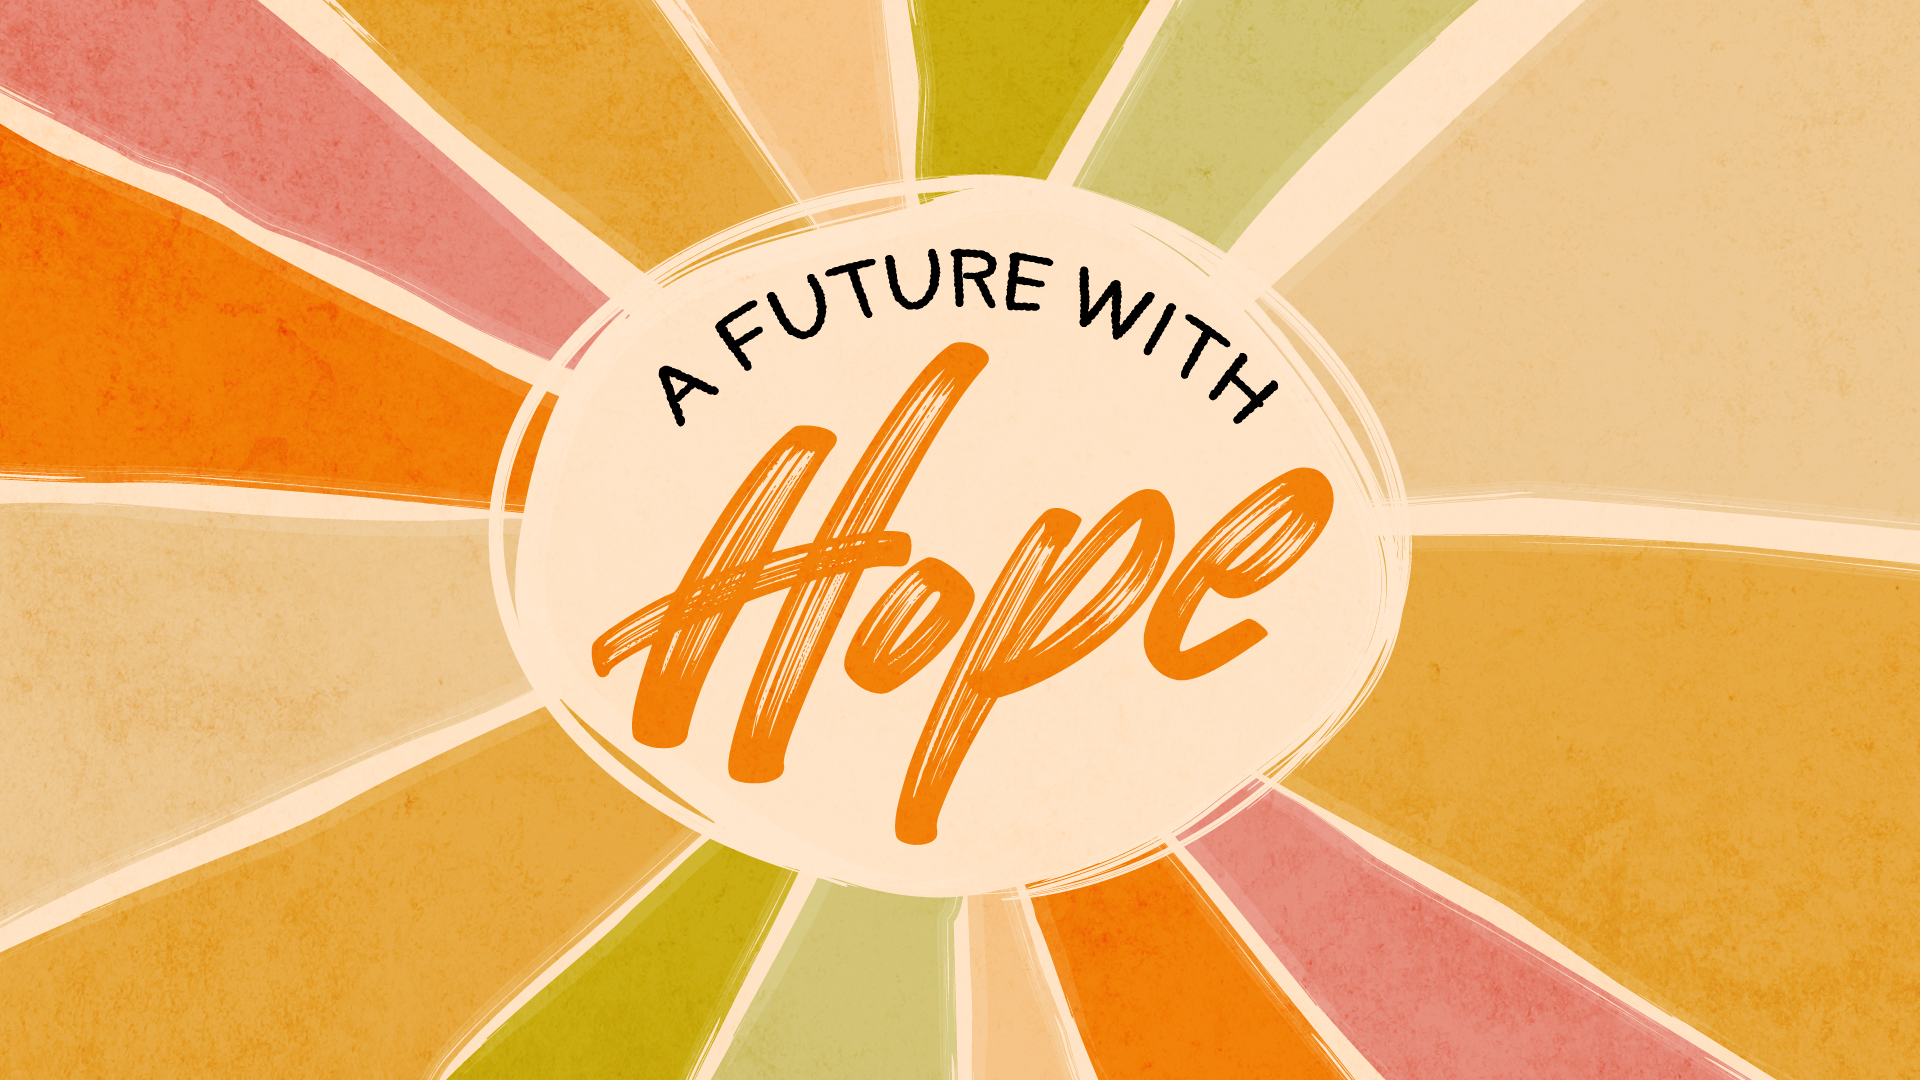 Sunday Worship: Celebrating A Future With Hope